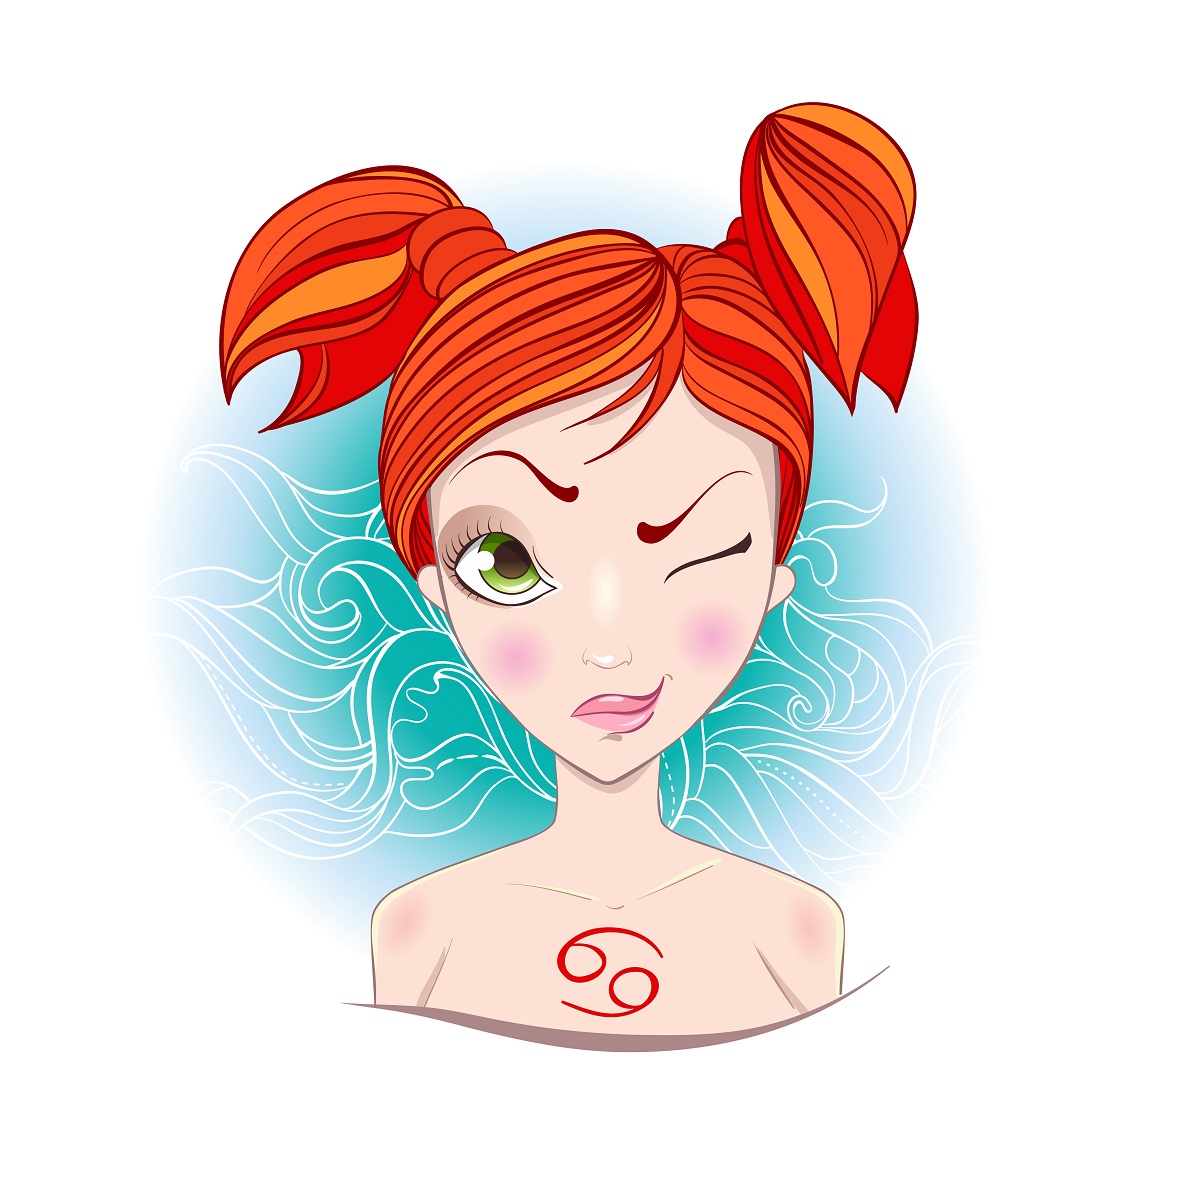 O femeie frumoasă, roșcată, care are părul prins în două codițe și face cu ochiul, reprezentând zodia Racului